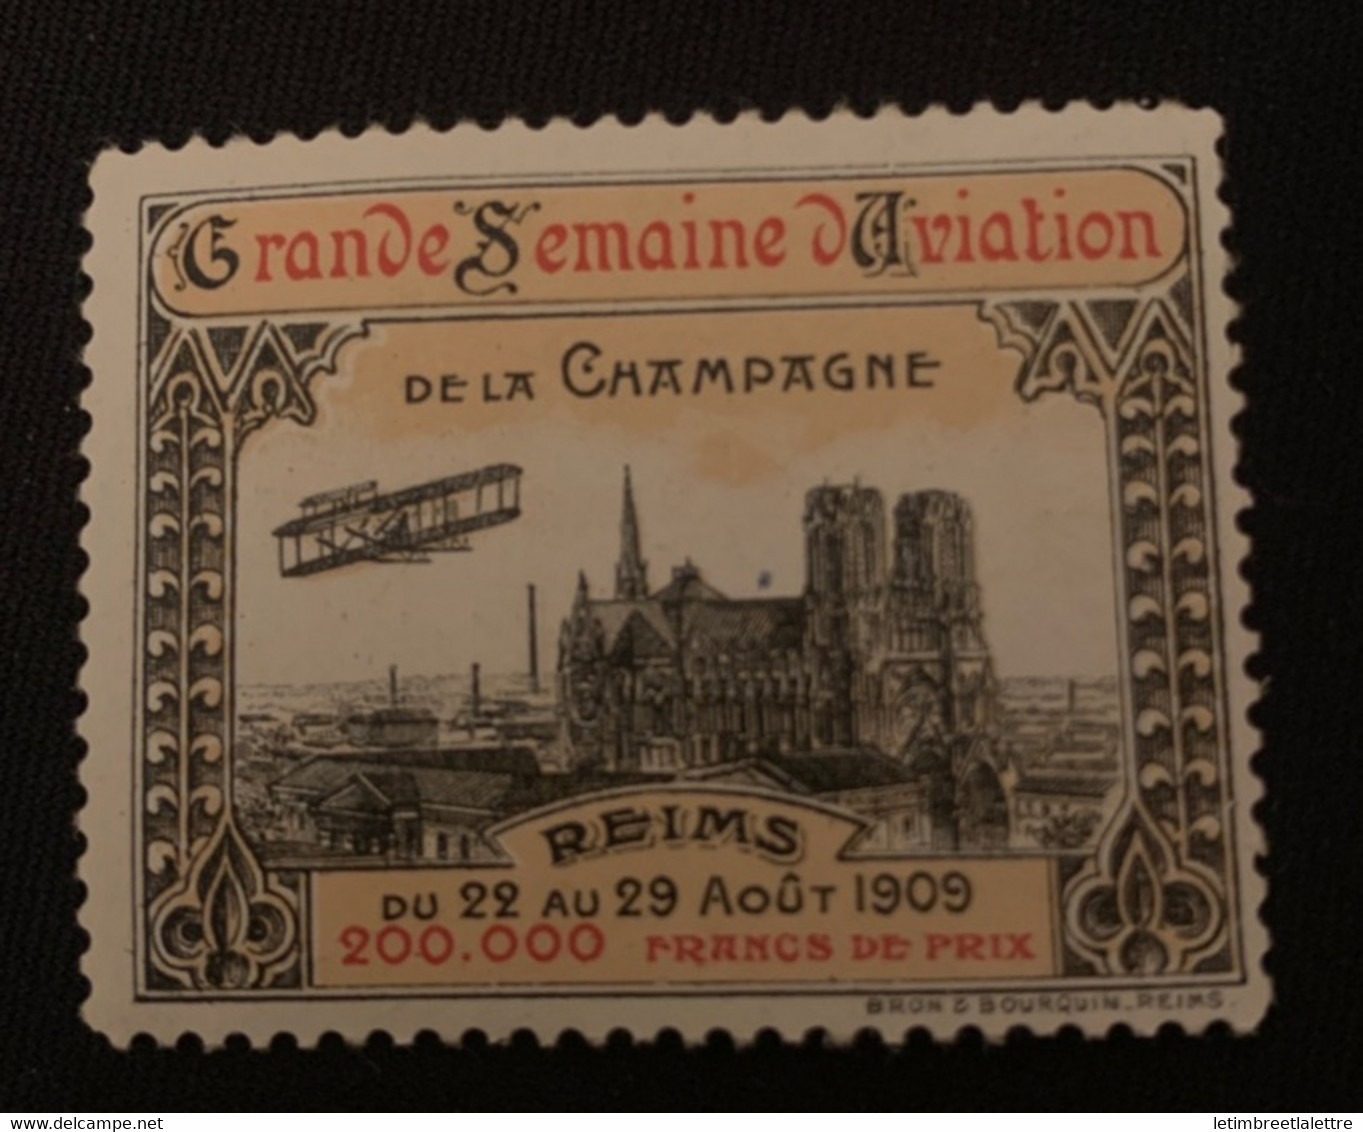 ⭐ France - Vignette - Grande Semaine D’aviation De La Campagne - Reims 1909 ⭐ - Aviation